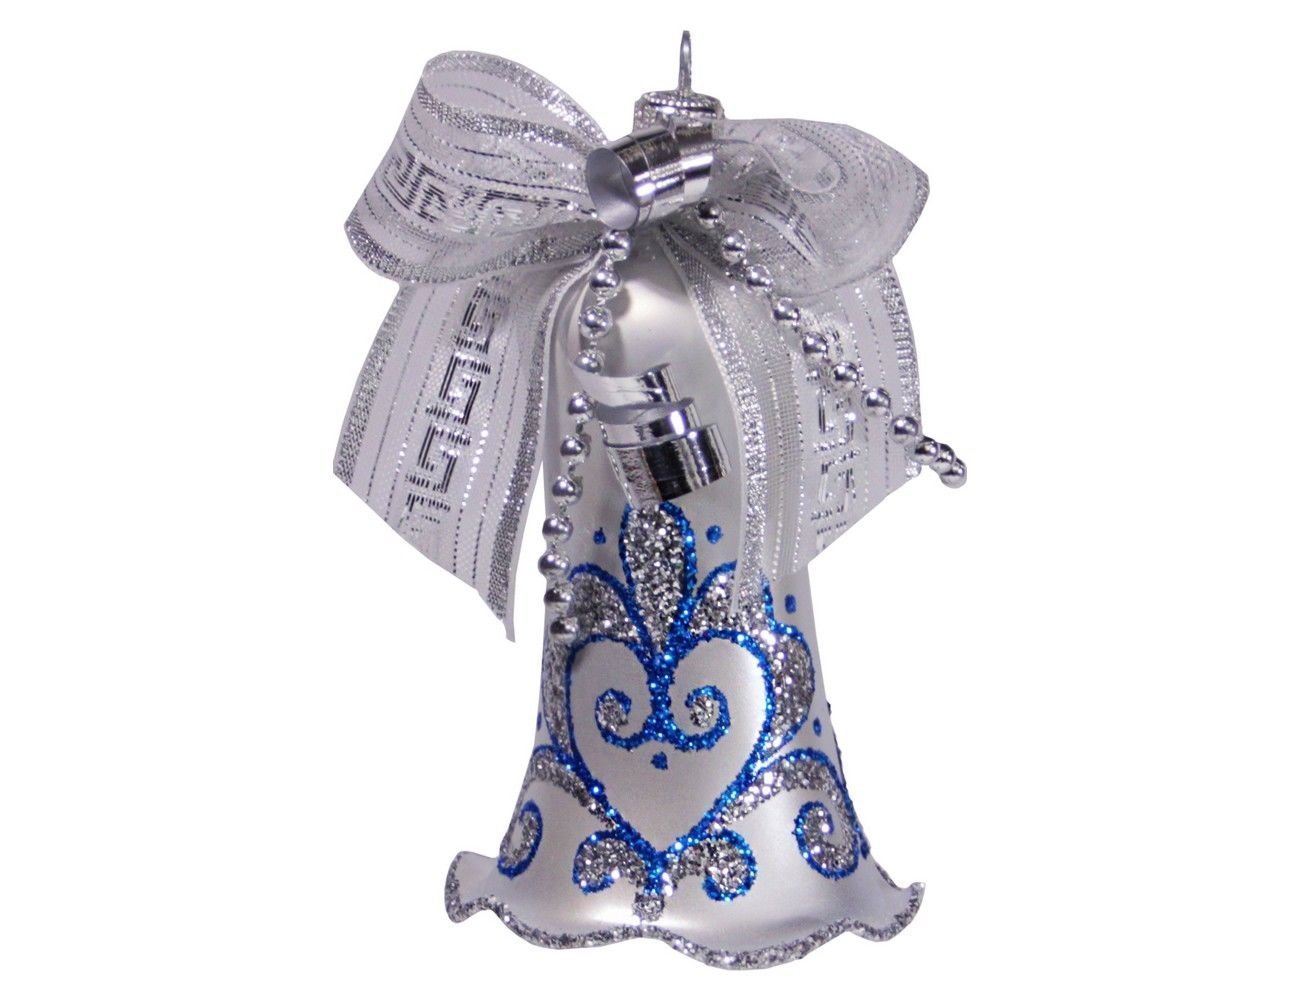 Елочное украшение колокольчик серебристый, синий орнамент, 85 мм, елочка